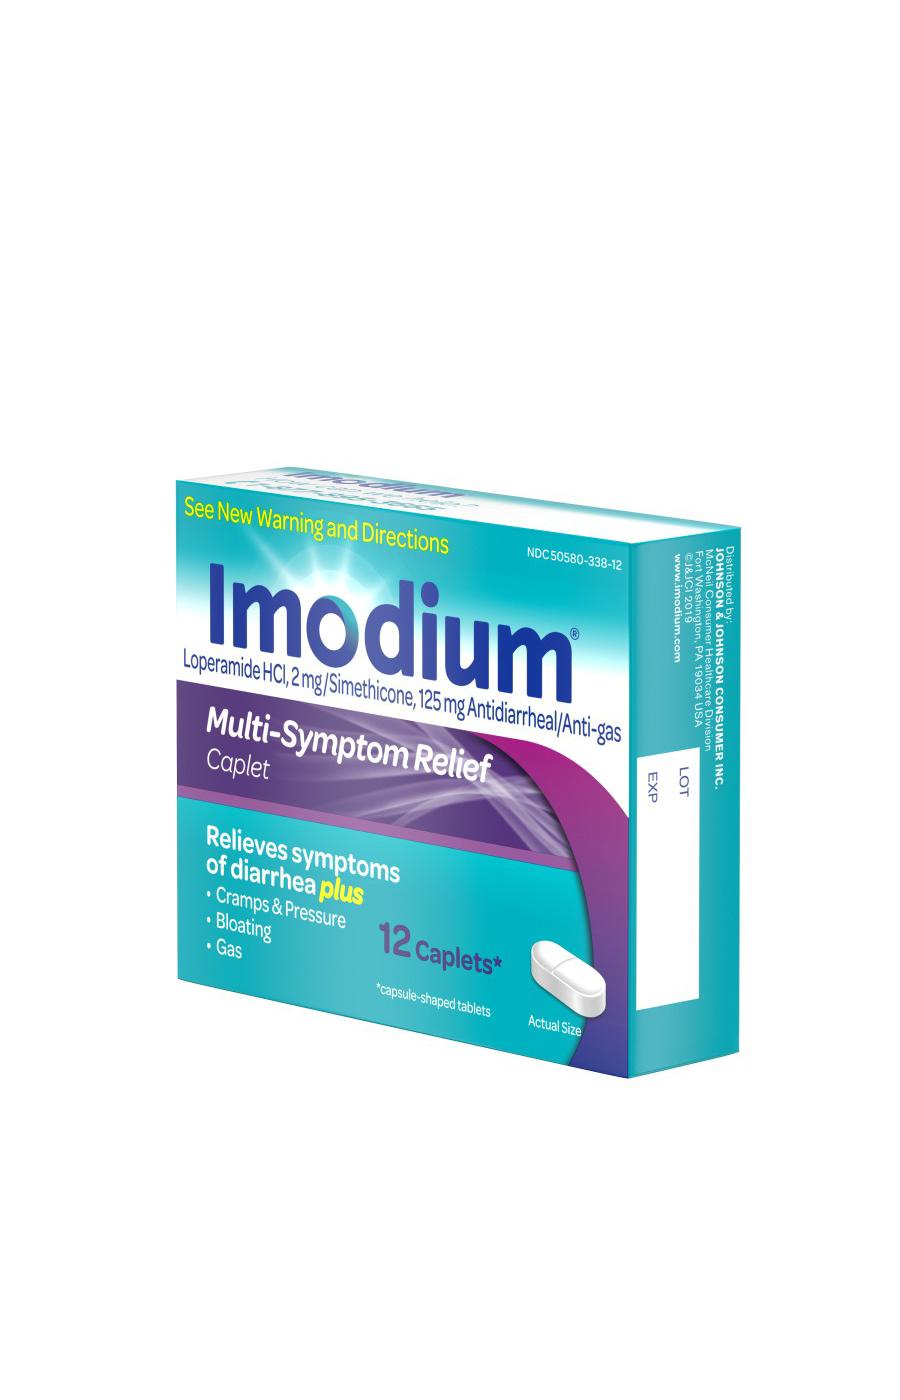 Imodium Multi-Symptom Relief Caplets; image 7 of 8